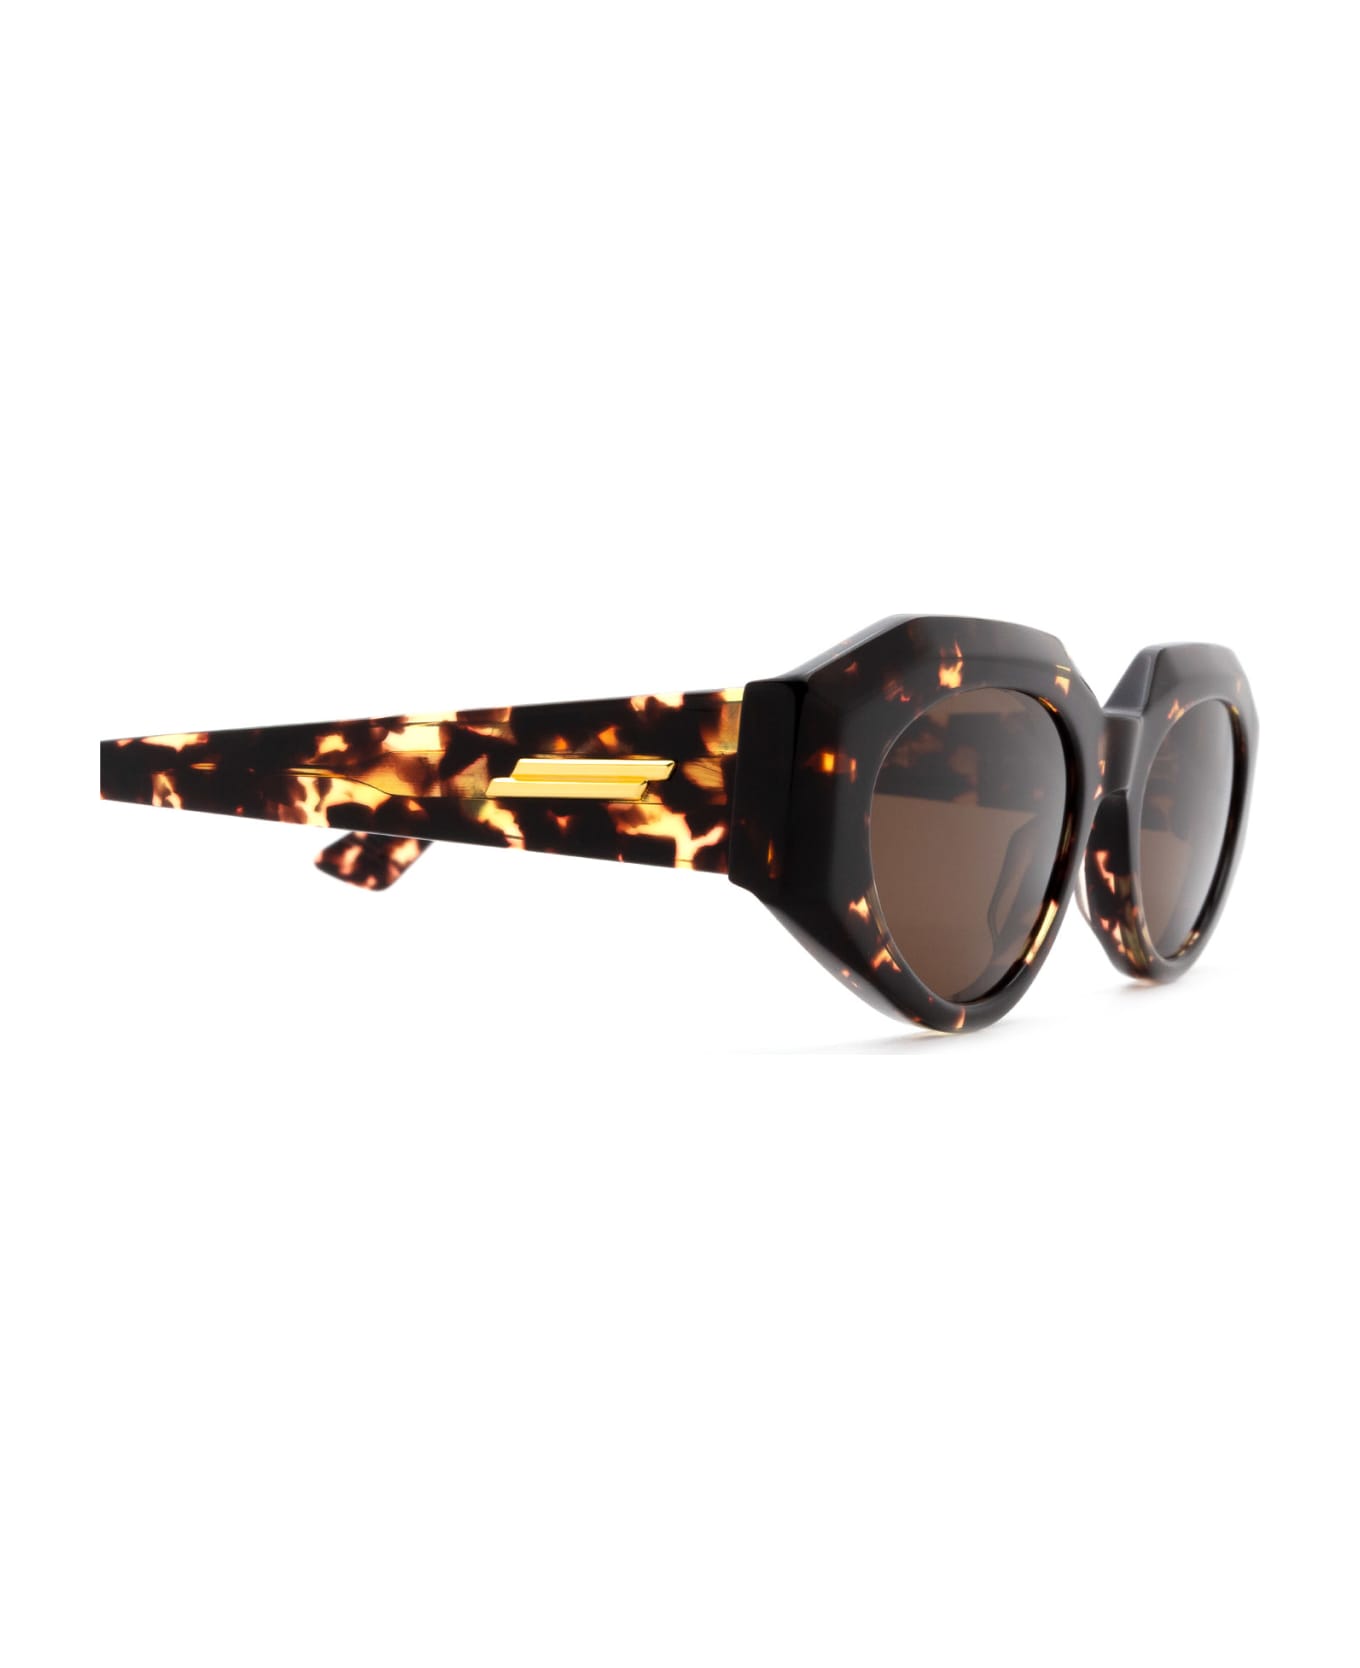 Bottega Veneta Eyewear Bv1031s Havana Sunglasses - Havana